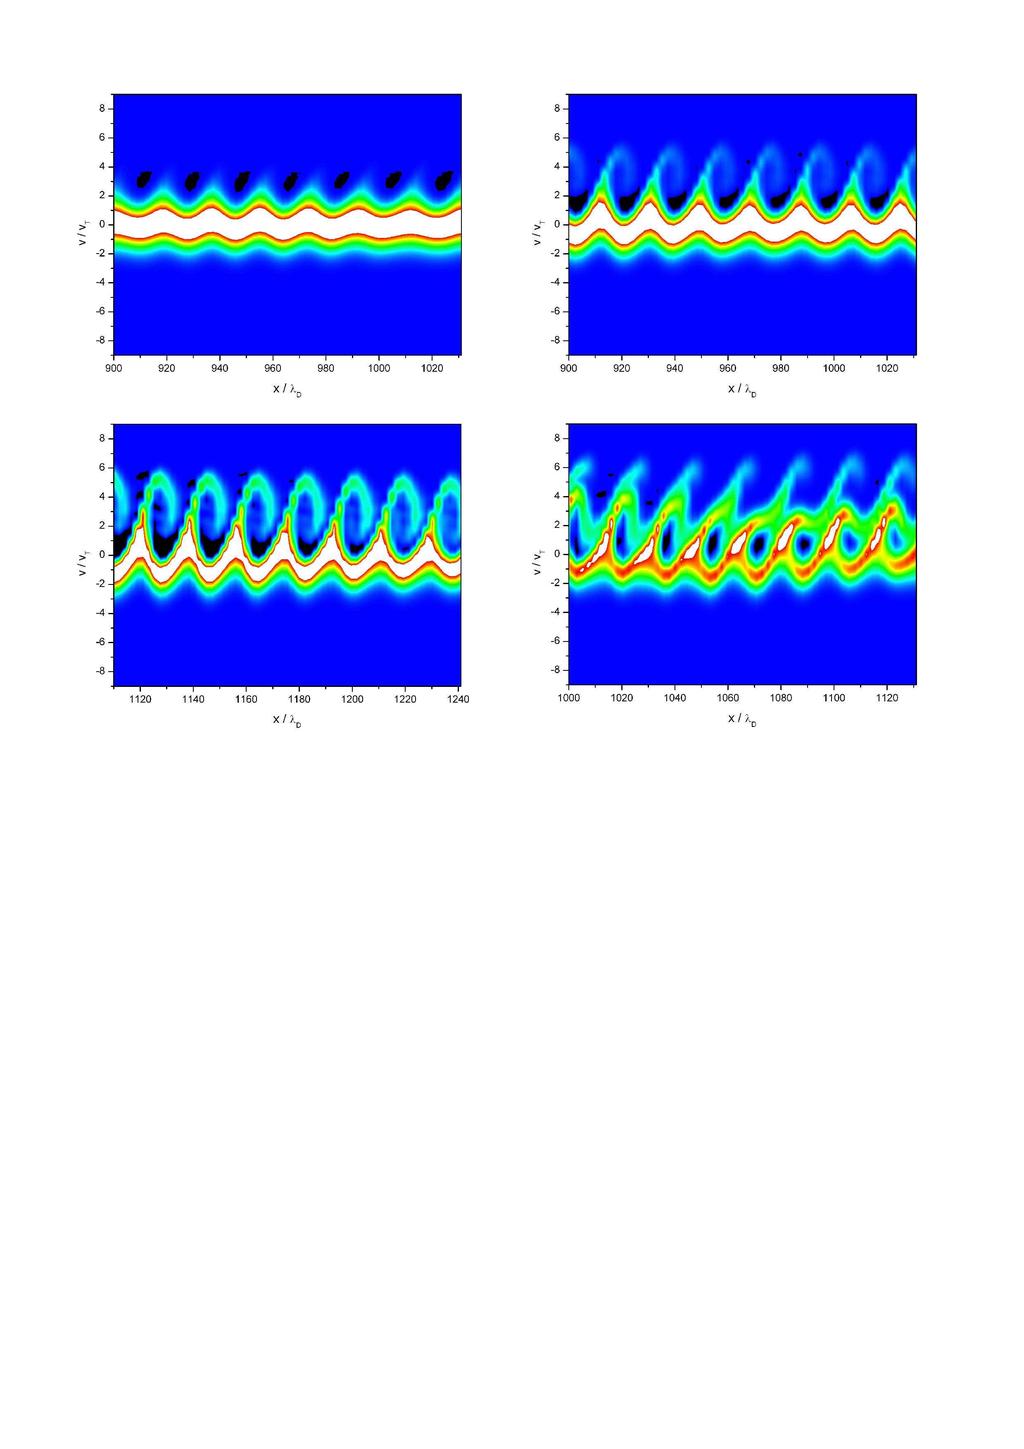 Obrázek 6.19: Vrstevnicové grafy elektronové rozdělovací funkce ve fázovém prostoru v časech ω pe t = 110, 130, 170 a 290.